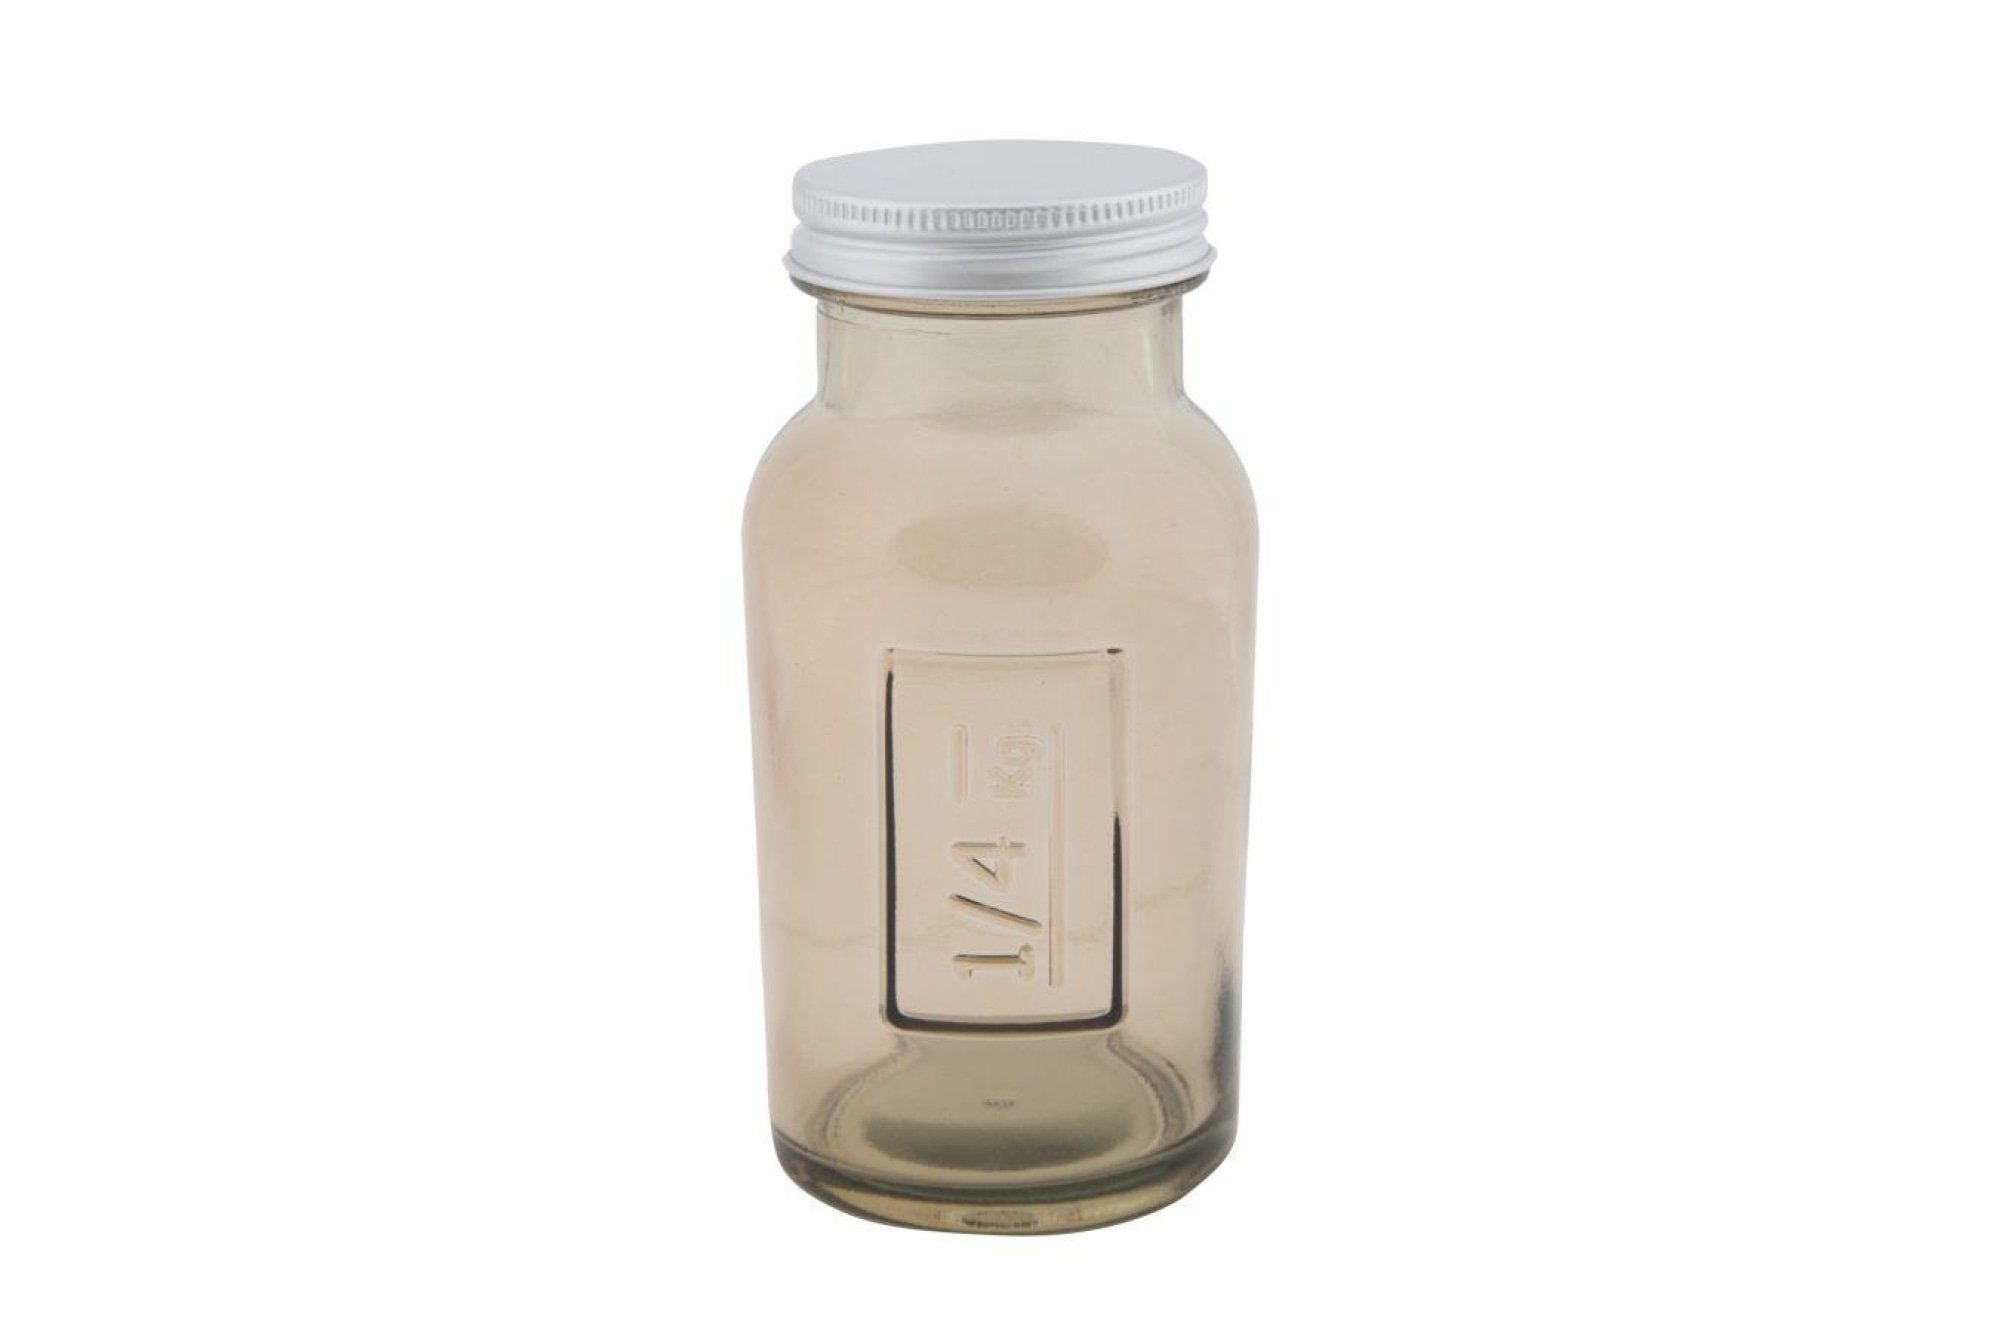 Üveg tároló - GREY JAR III szürkésbarna üveg üveg tároló